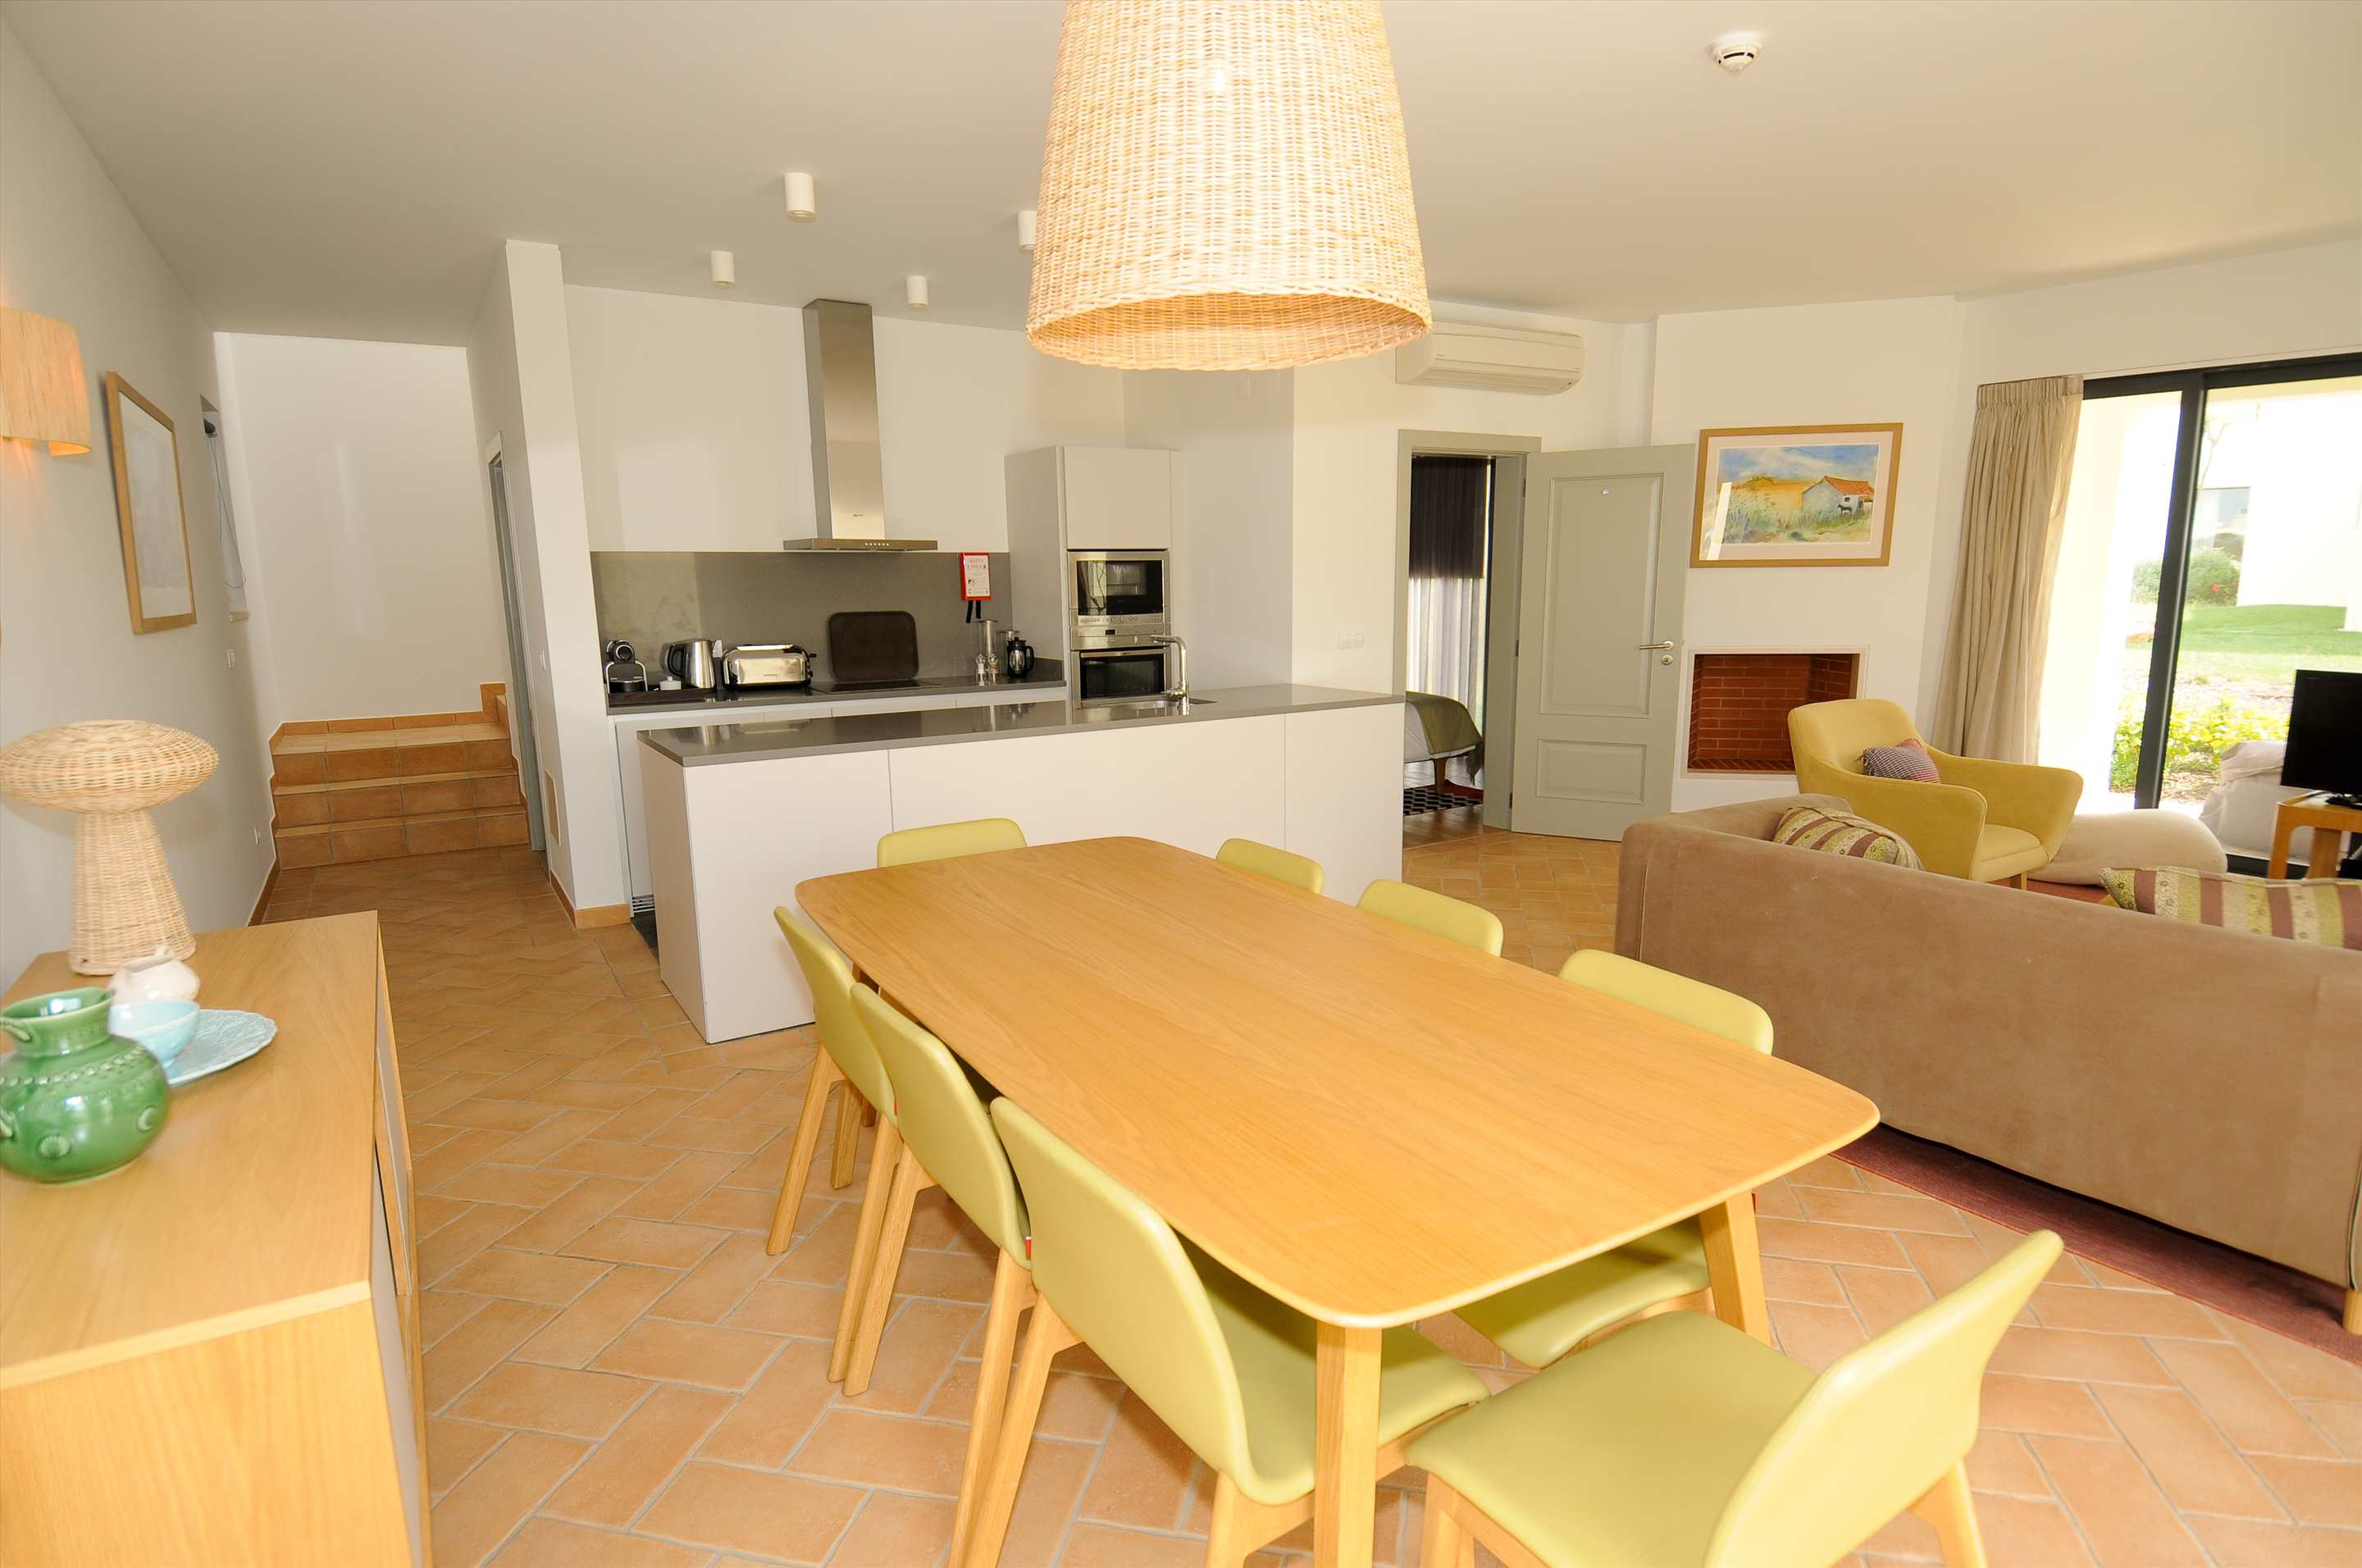 Martinhal Village Garden House, Deluxe One Bedroom Apartment, 1 bedroom villa in Martinhal Sagres, Algarve Photo #3